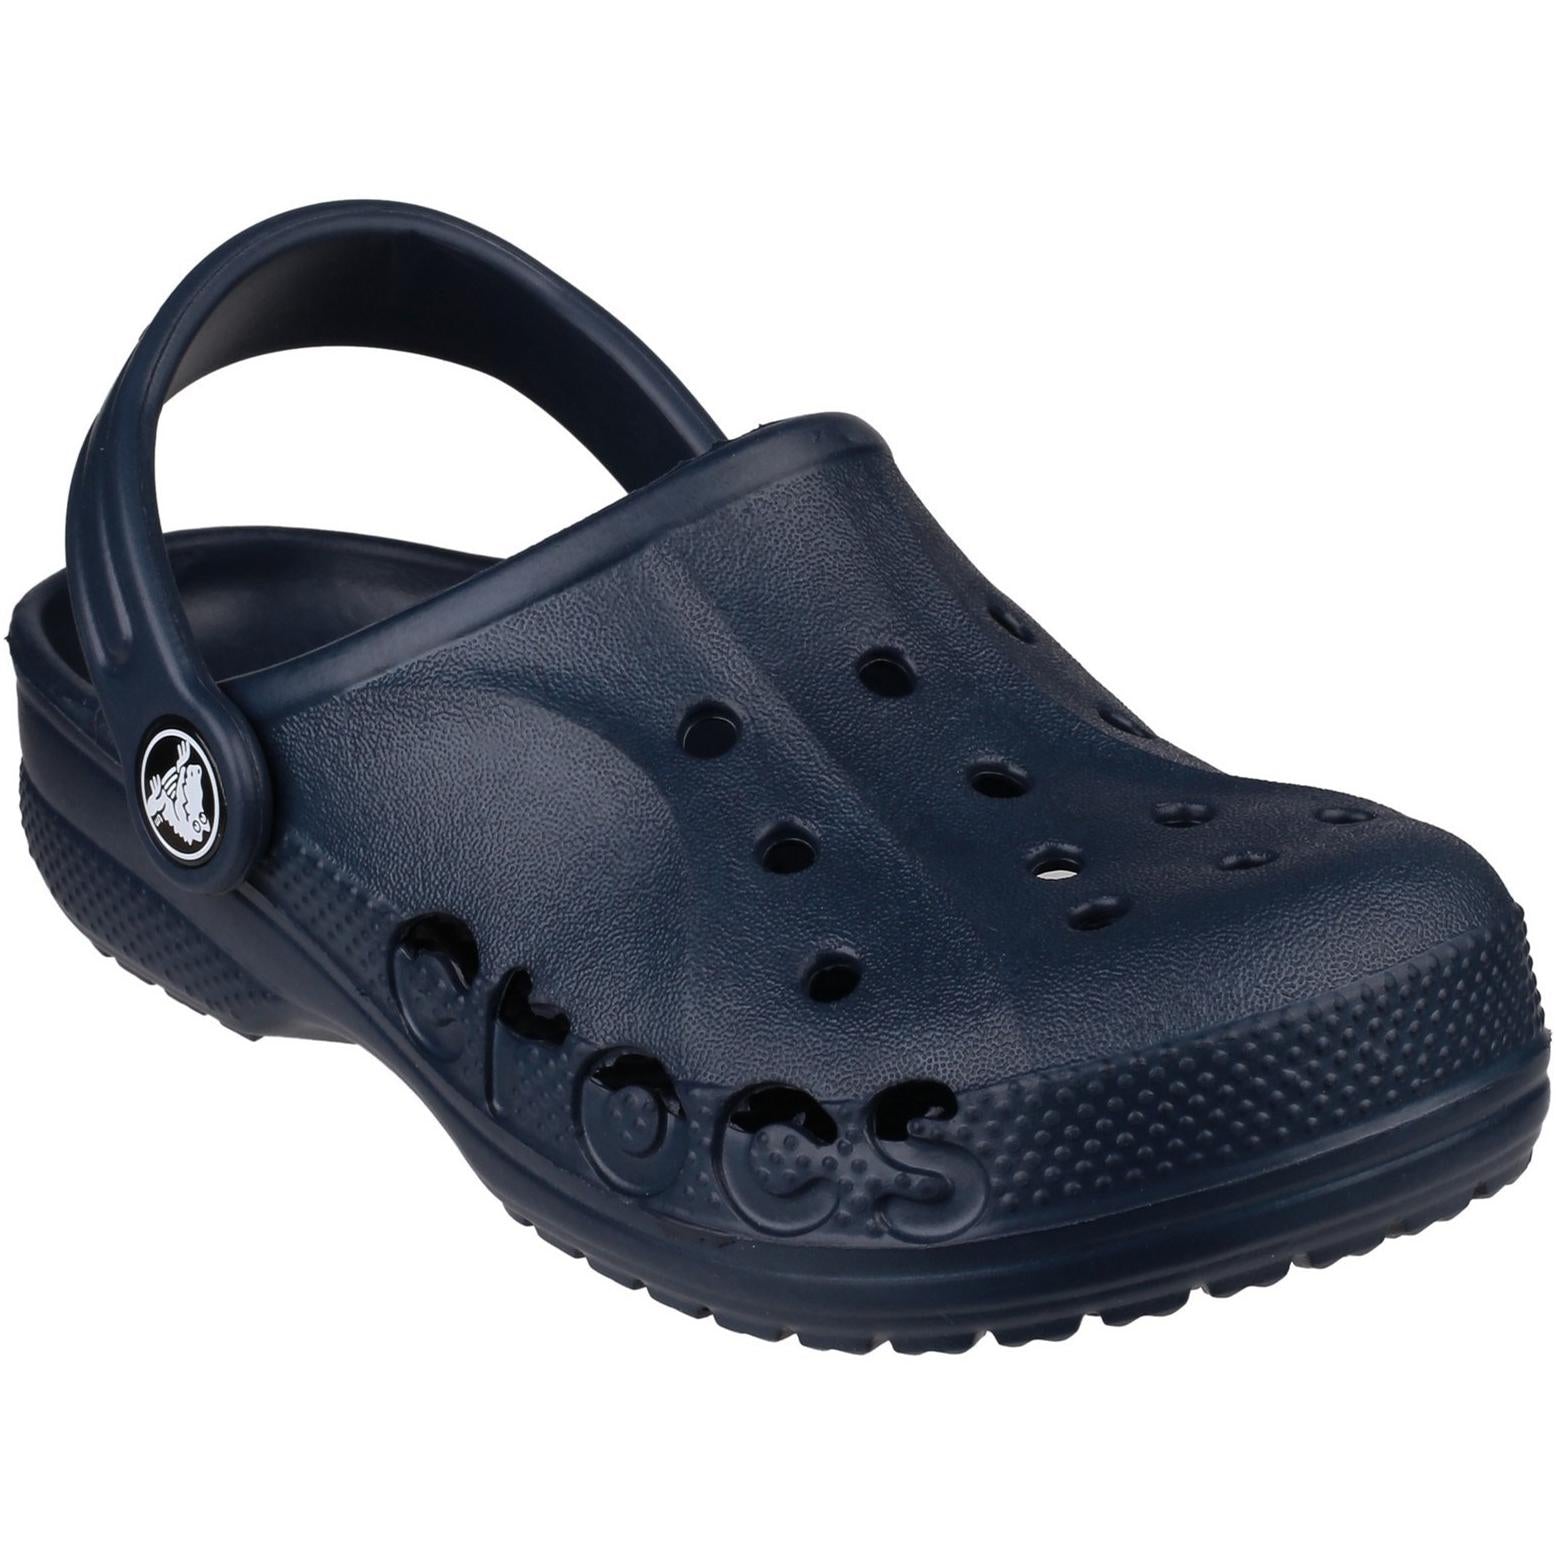 Crocs Baya Clog Sandals